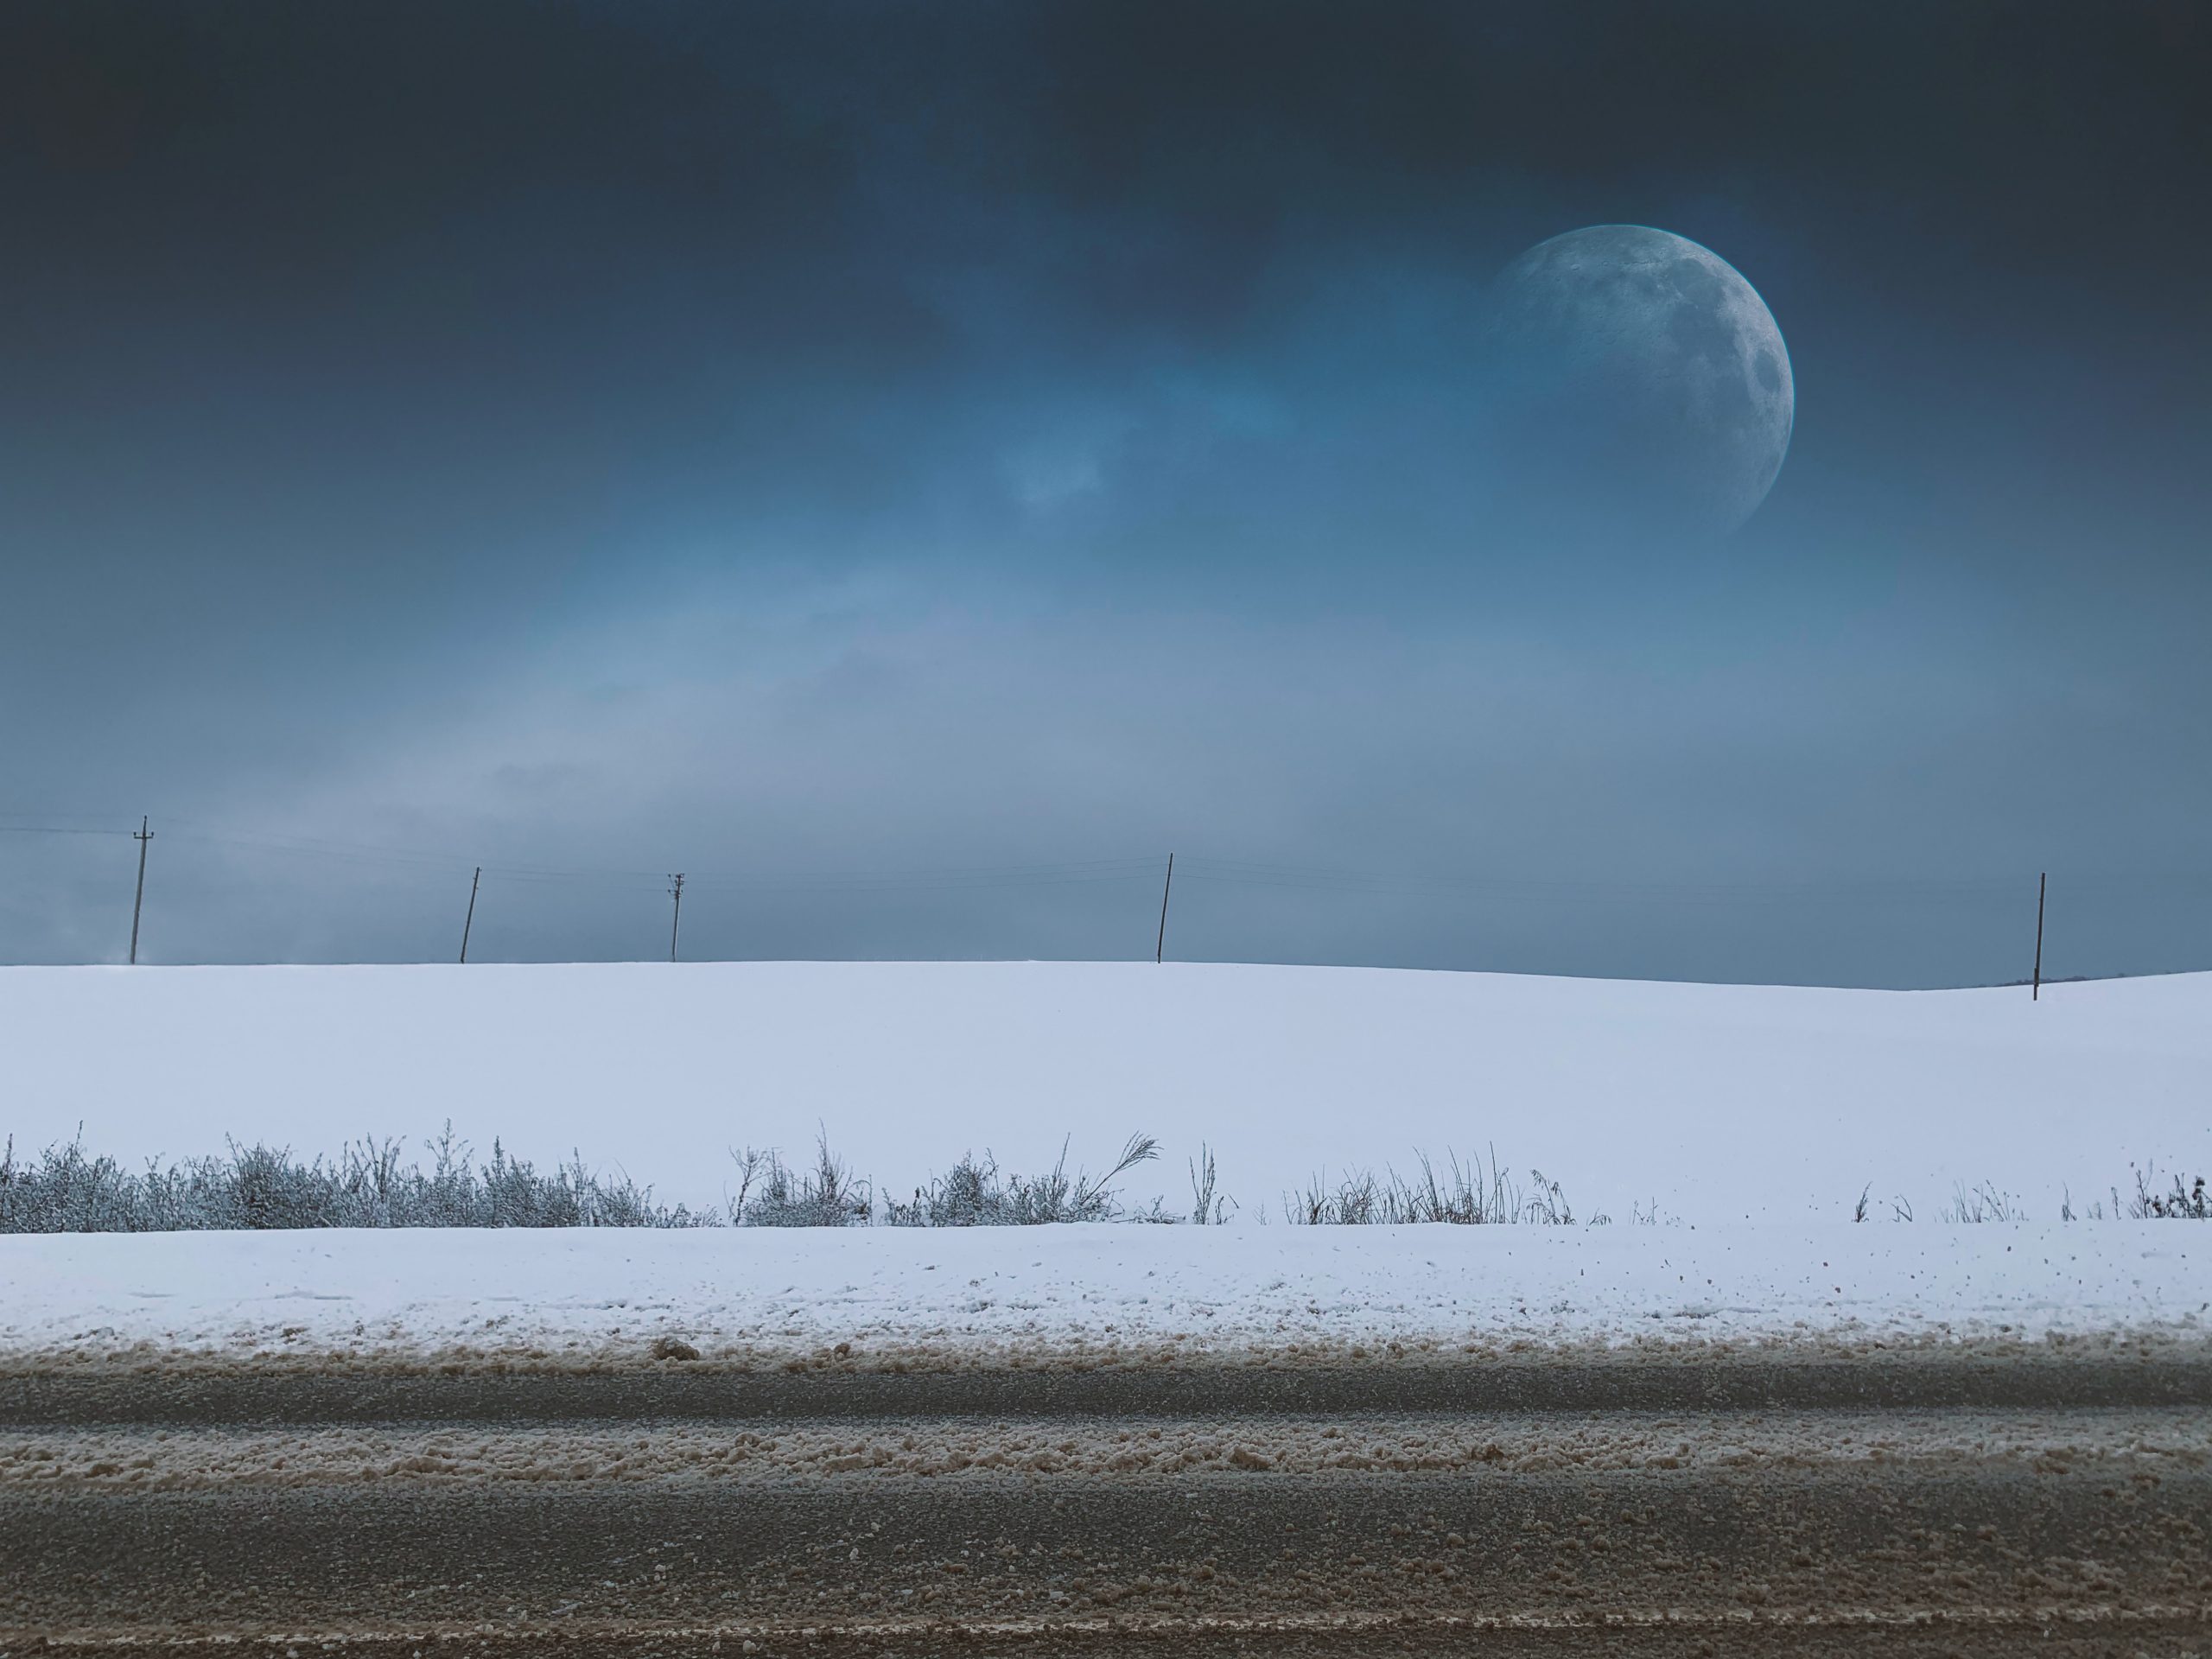 Une photographie d'un champ couvert de neige avec des touffes d'herbe qui dépassent. Au-dessus, le ciel est d'un bleu sombre avec des volutes de nuages fumés. À droite, la pleine lune perce les nuages.